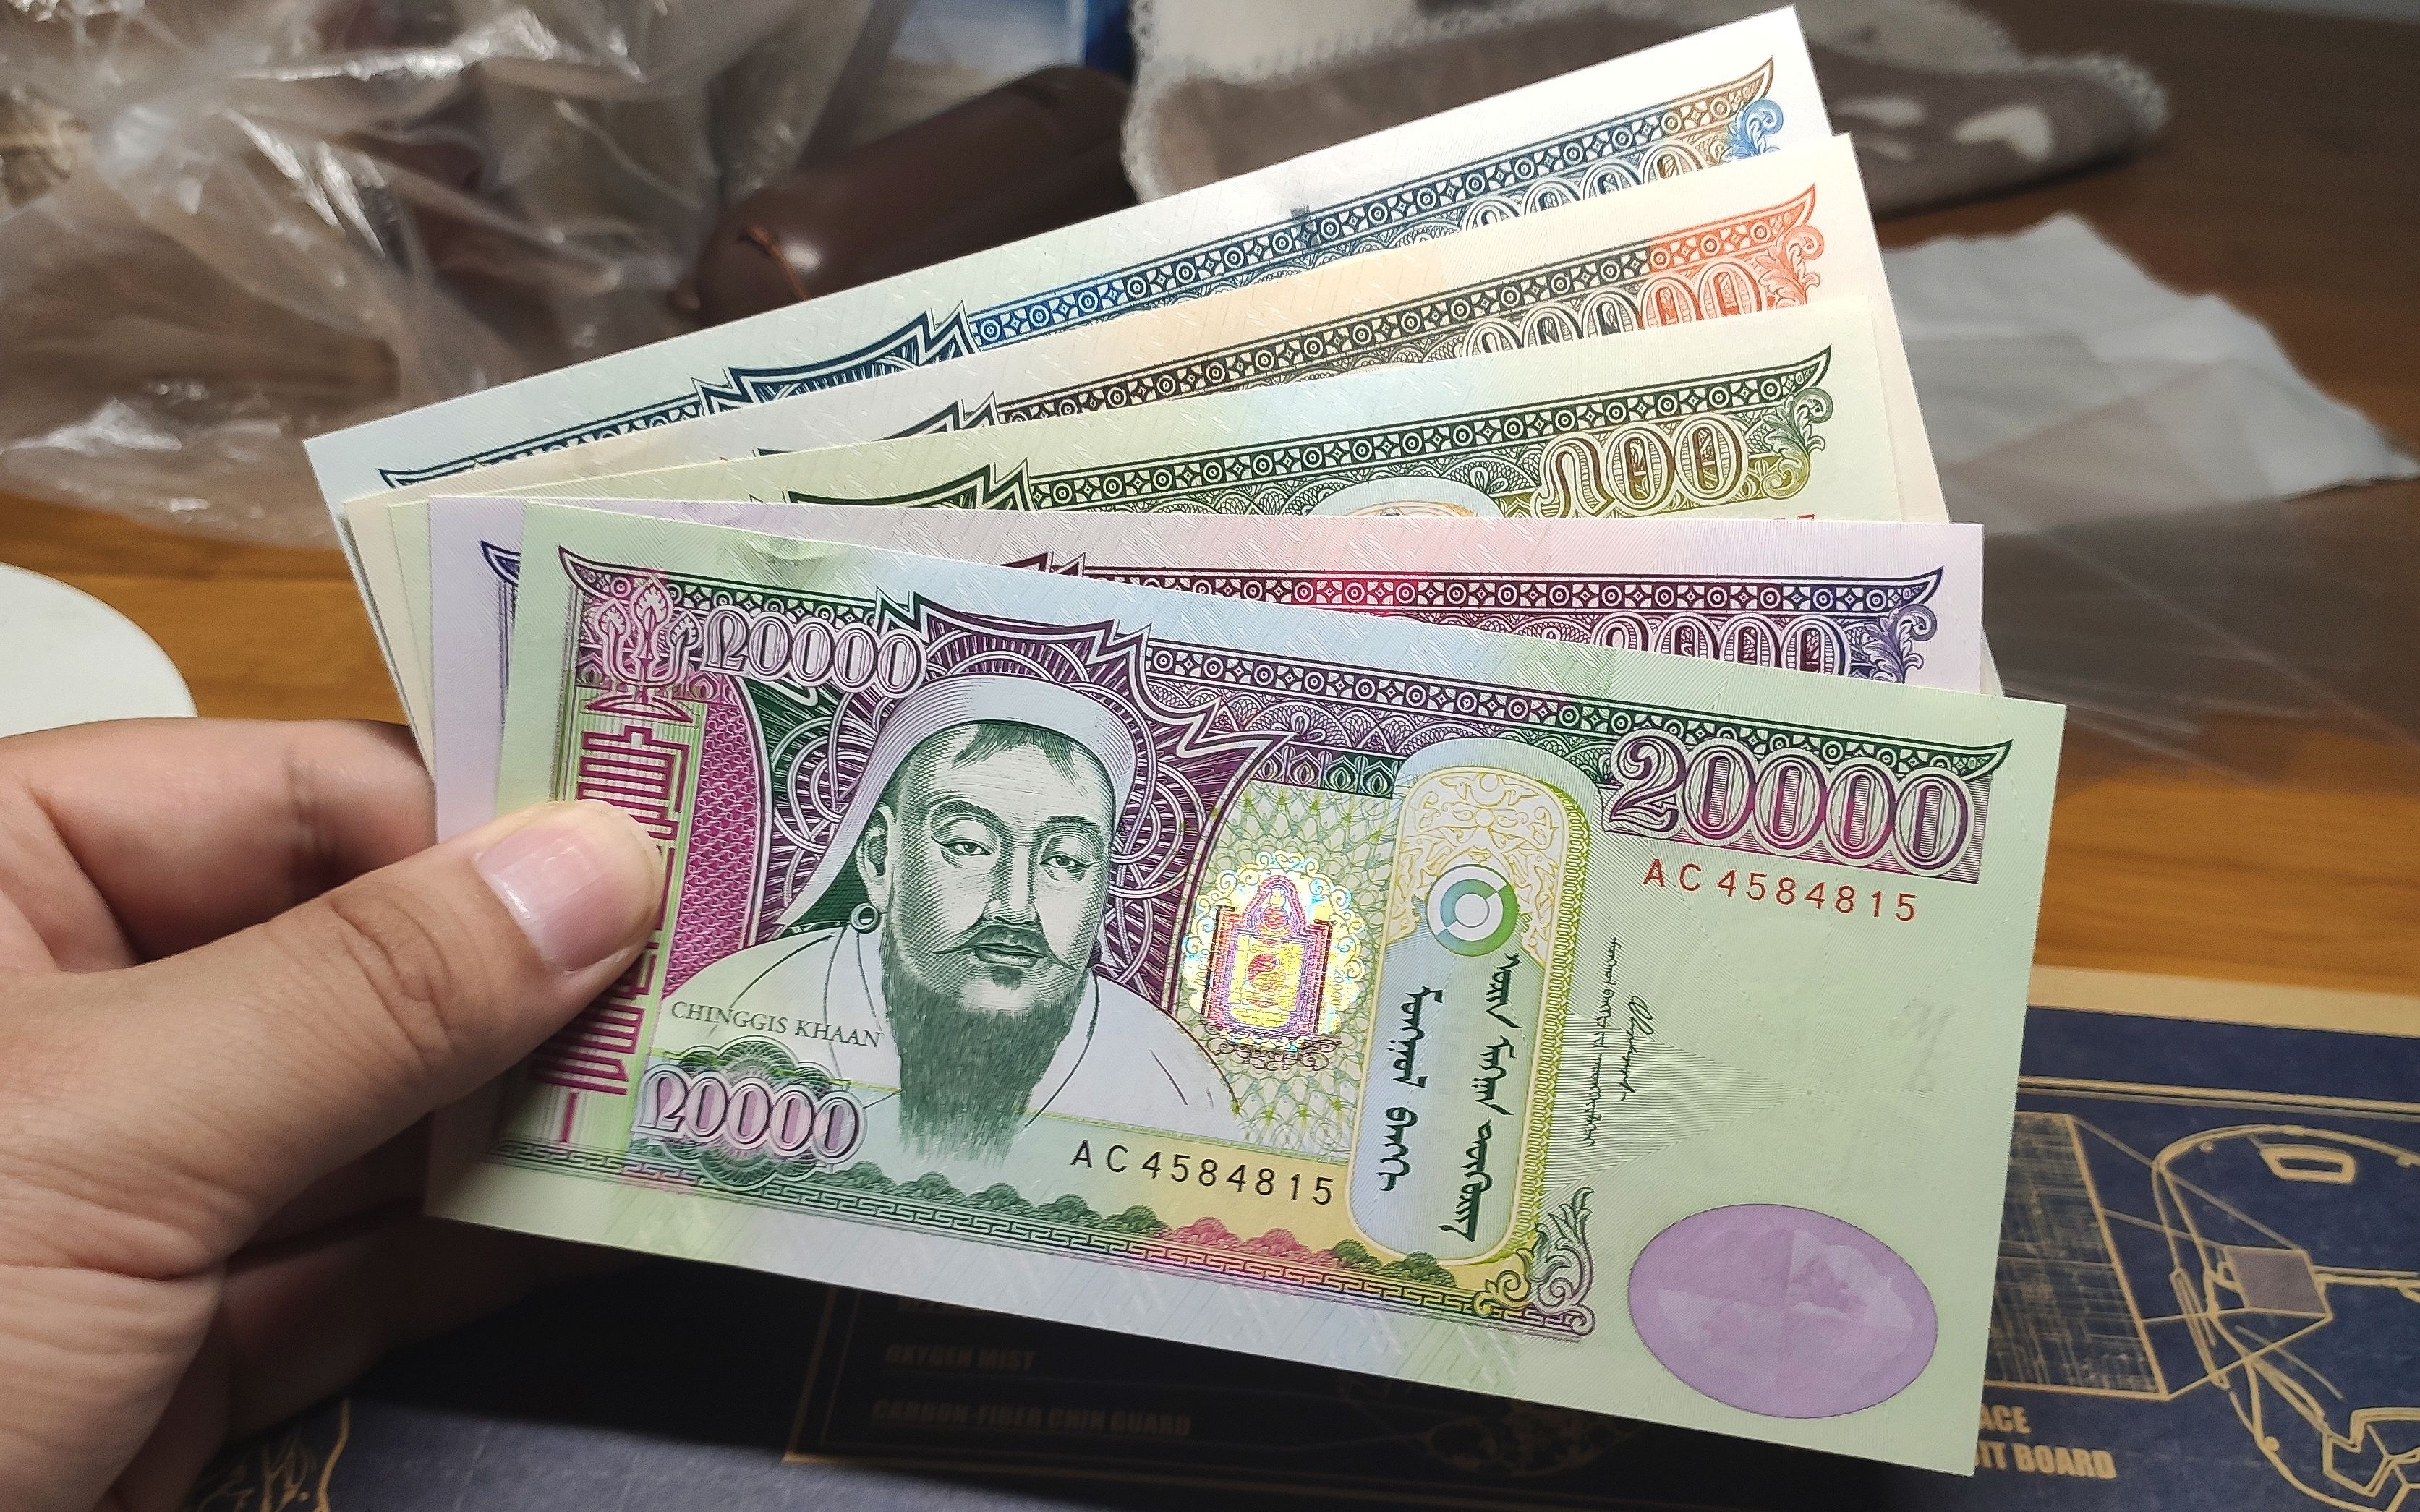 收来一套蒙古的钞票,最高面额20000才值人民币50元!